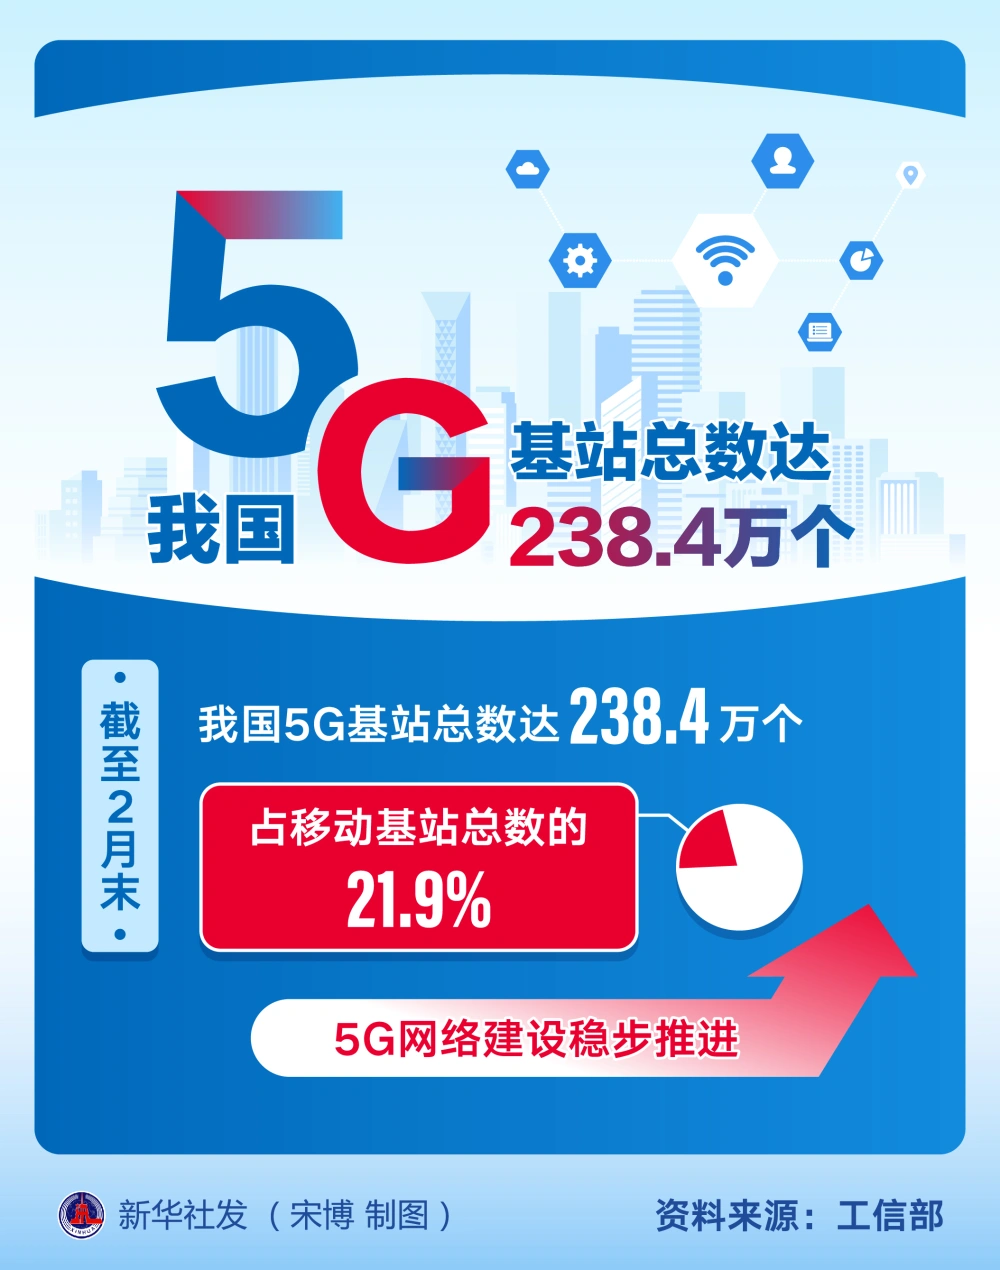 北京 5G 网络建设现状及体验：全面加速，覆盖范围稳步扩大  第1张